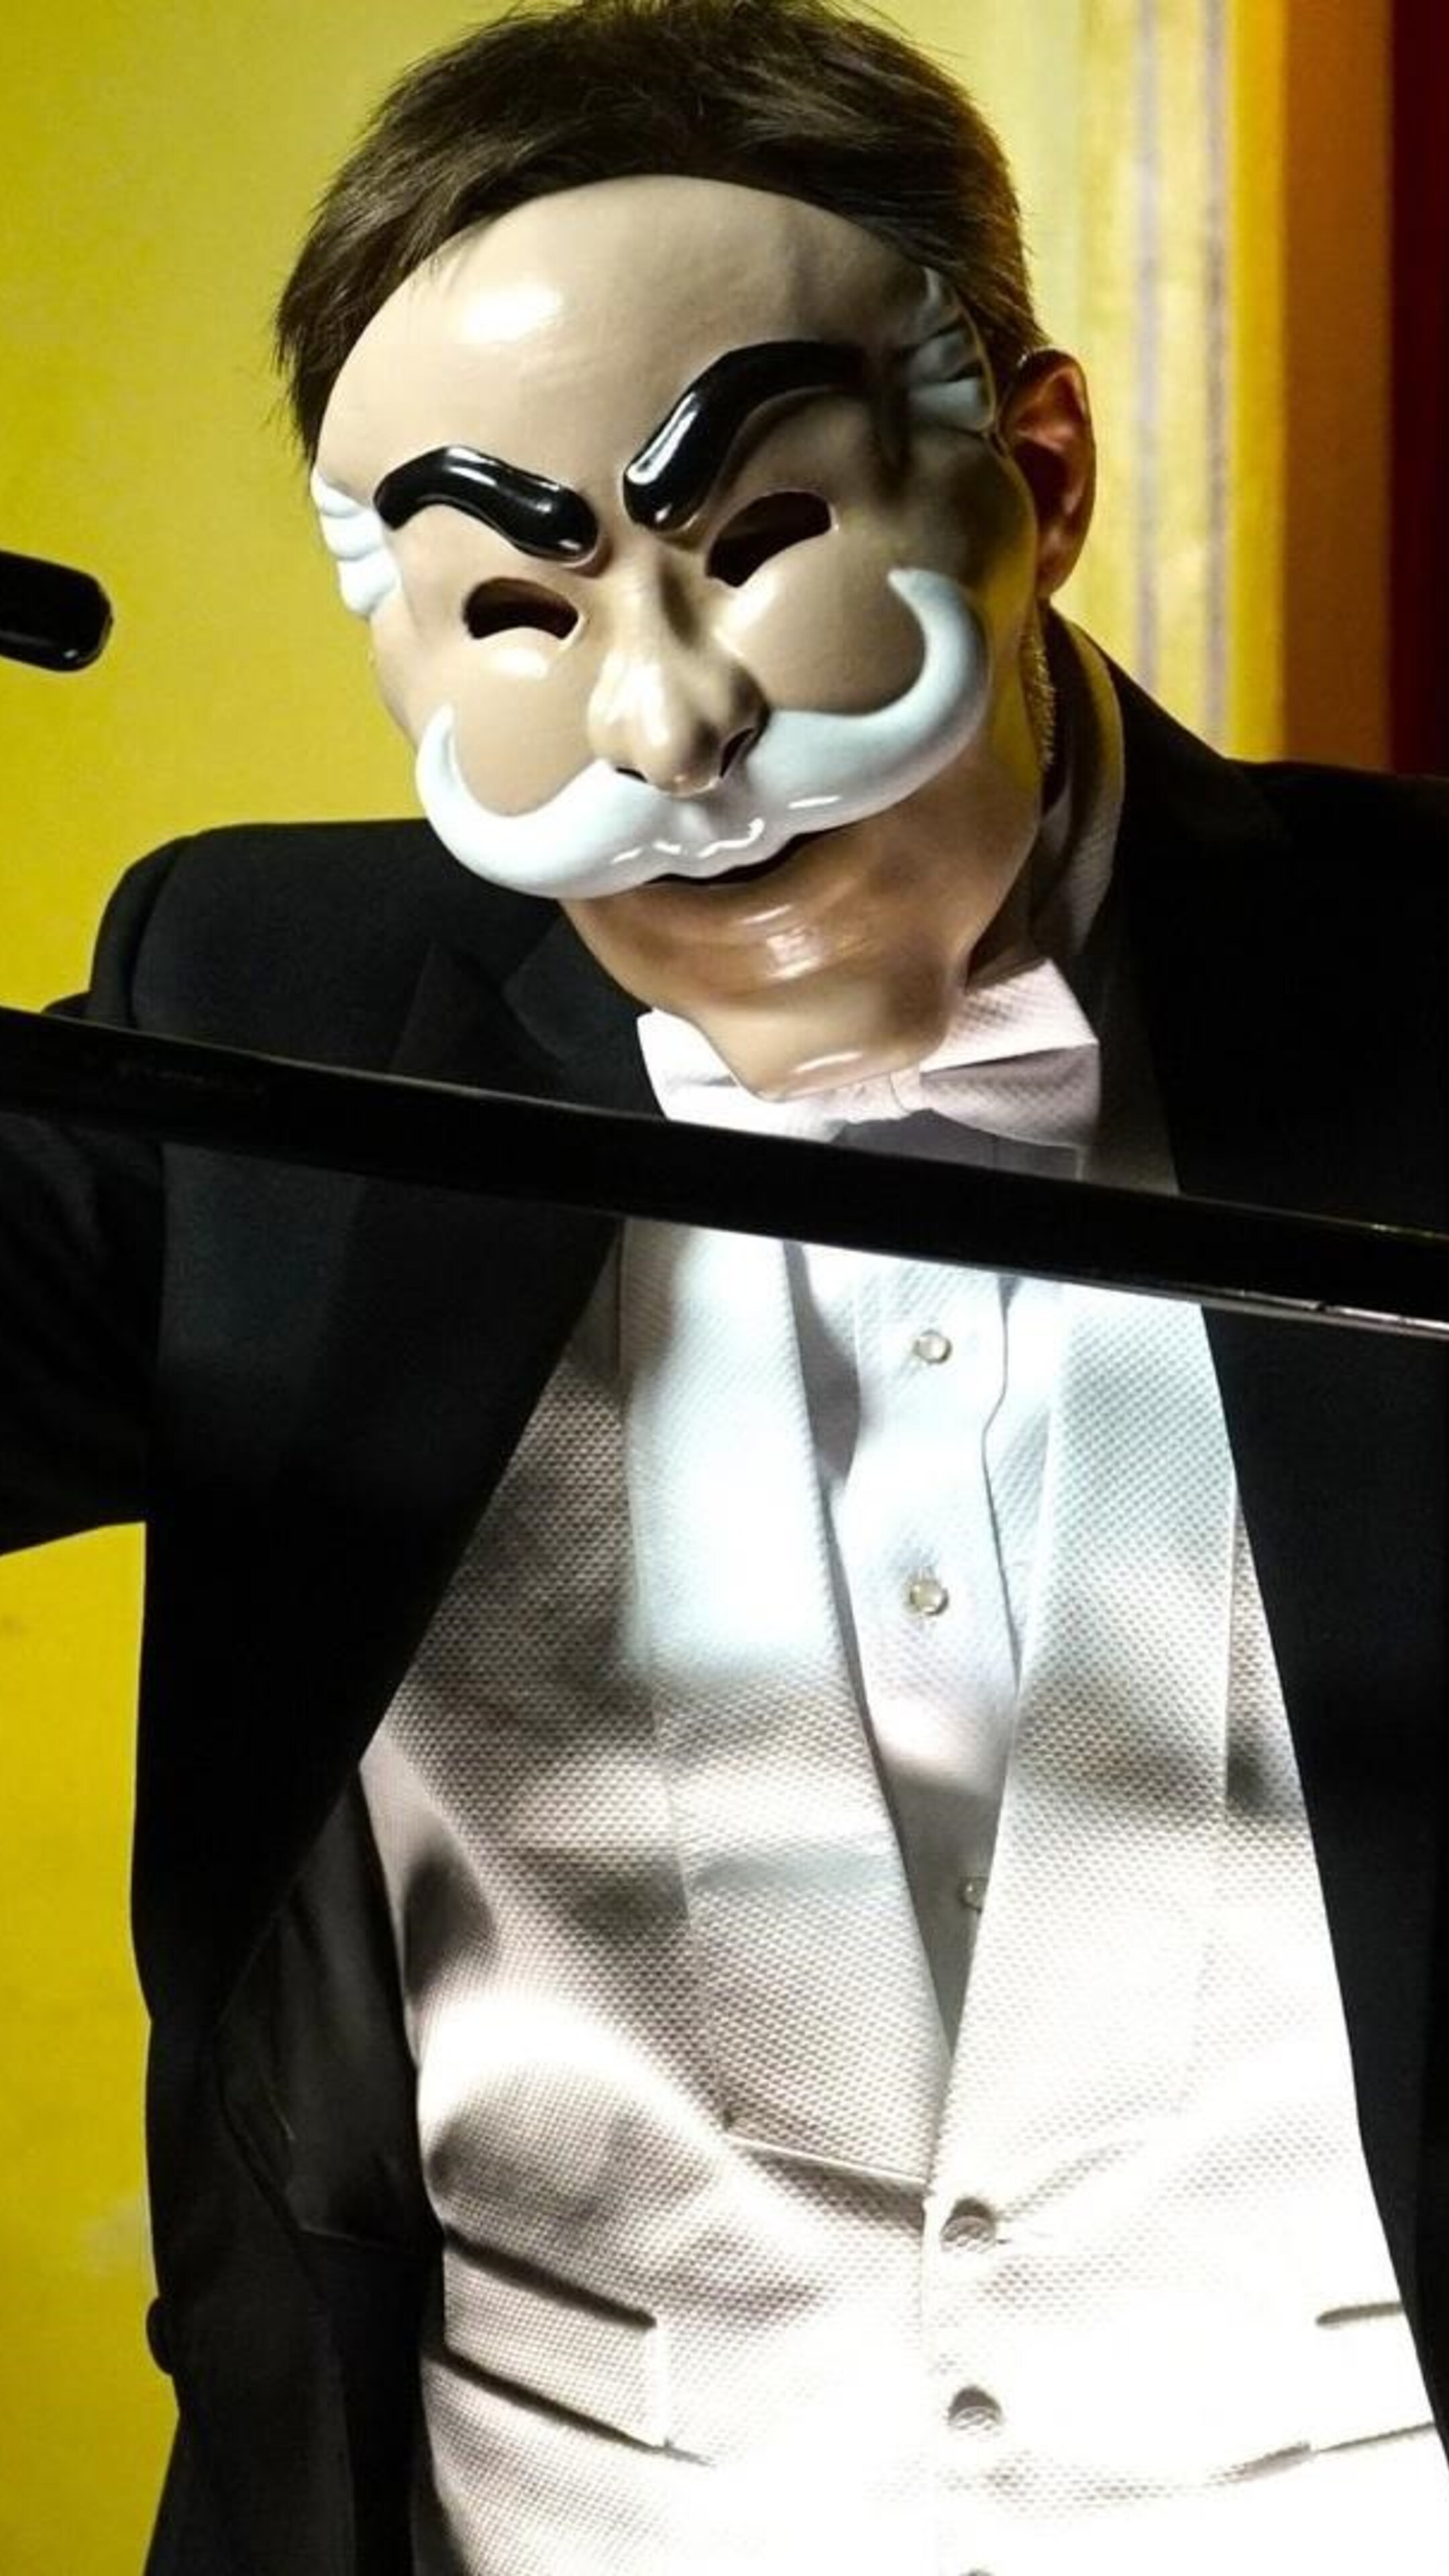 Какую маску откроют сегодня в шоу маска. Mr Robot маска. Шоу маска 2 часть. Милохин в шоу маска.